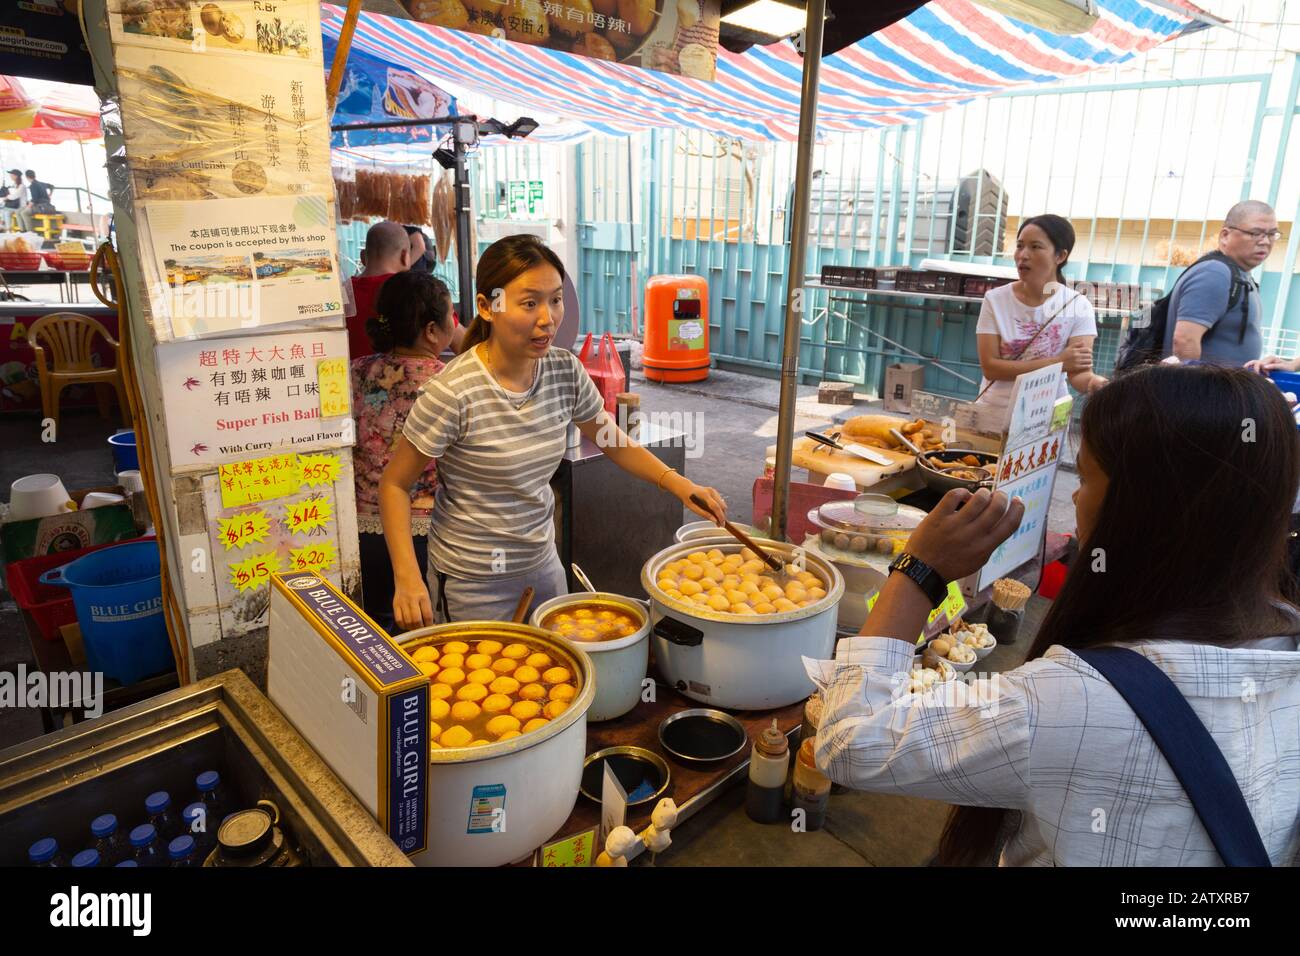 Les gens qui achètent de la nourriture dans une rue de l'étalage; le marché de Tai O, le village de pêche de Tai O, l'île de Lantau, Hong Kong Asie Banque D'Images